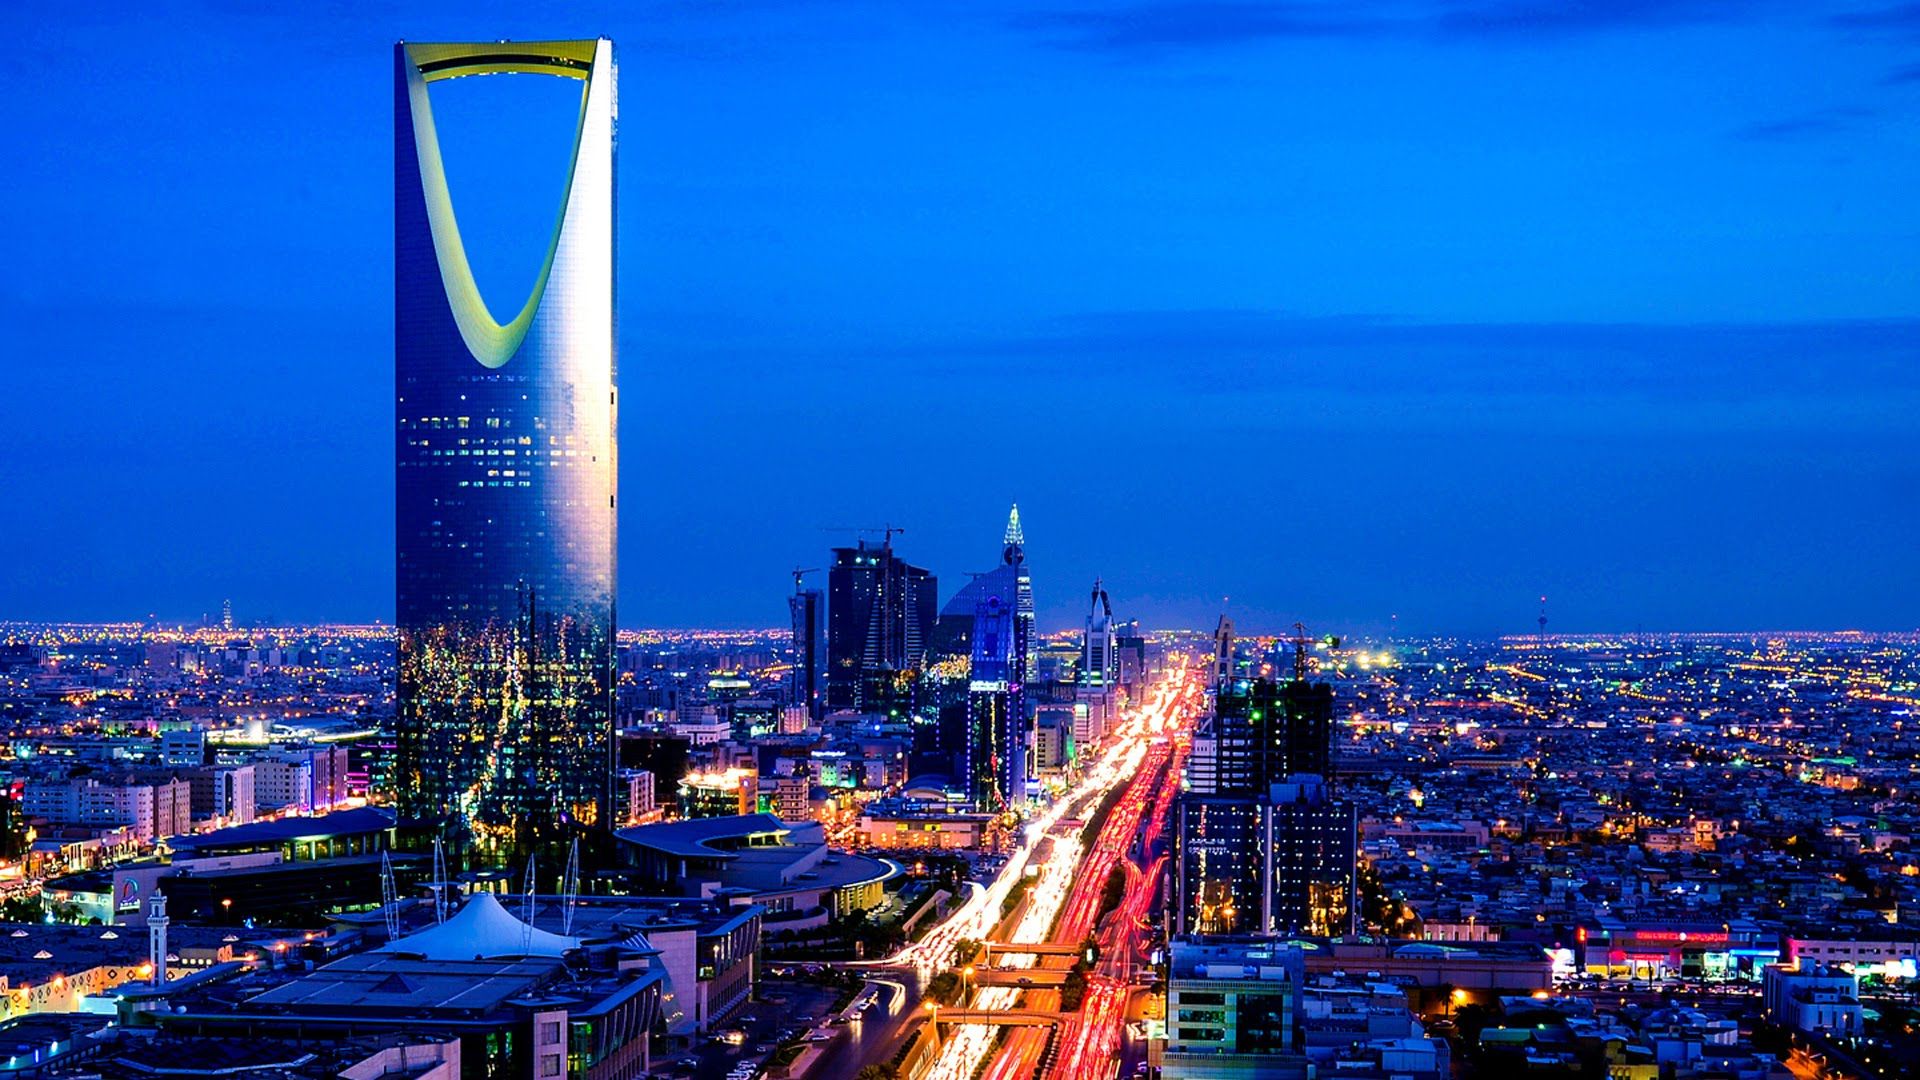 saudi arabia iPhone Wallpapers Free Download